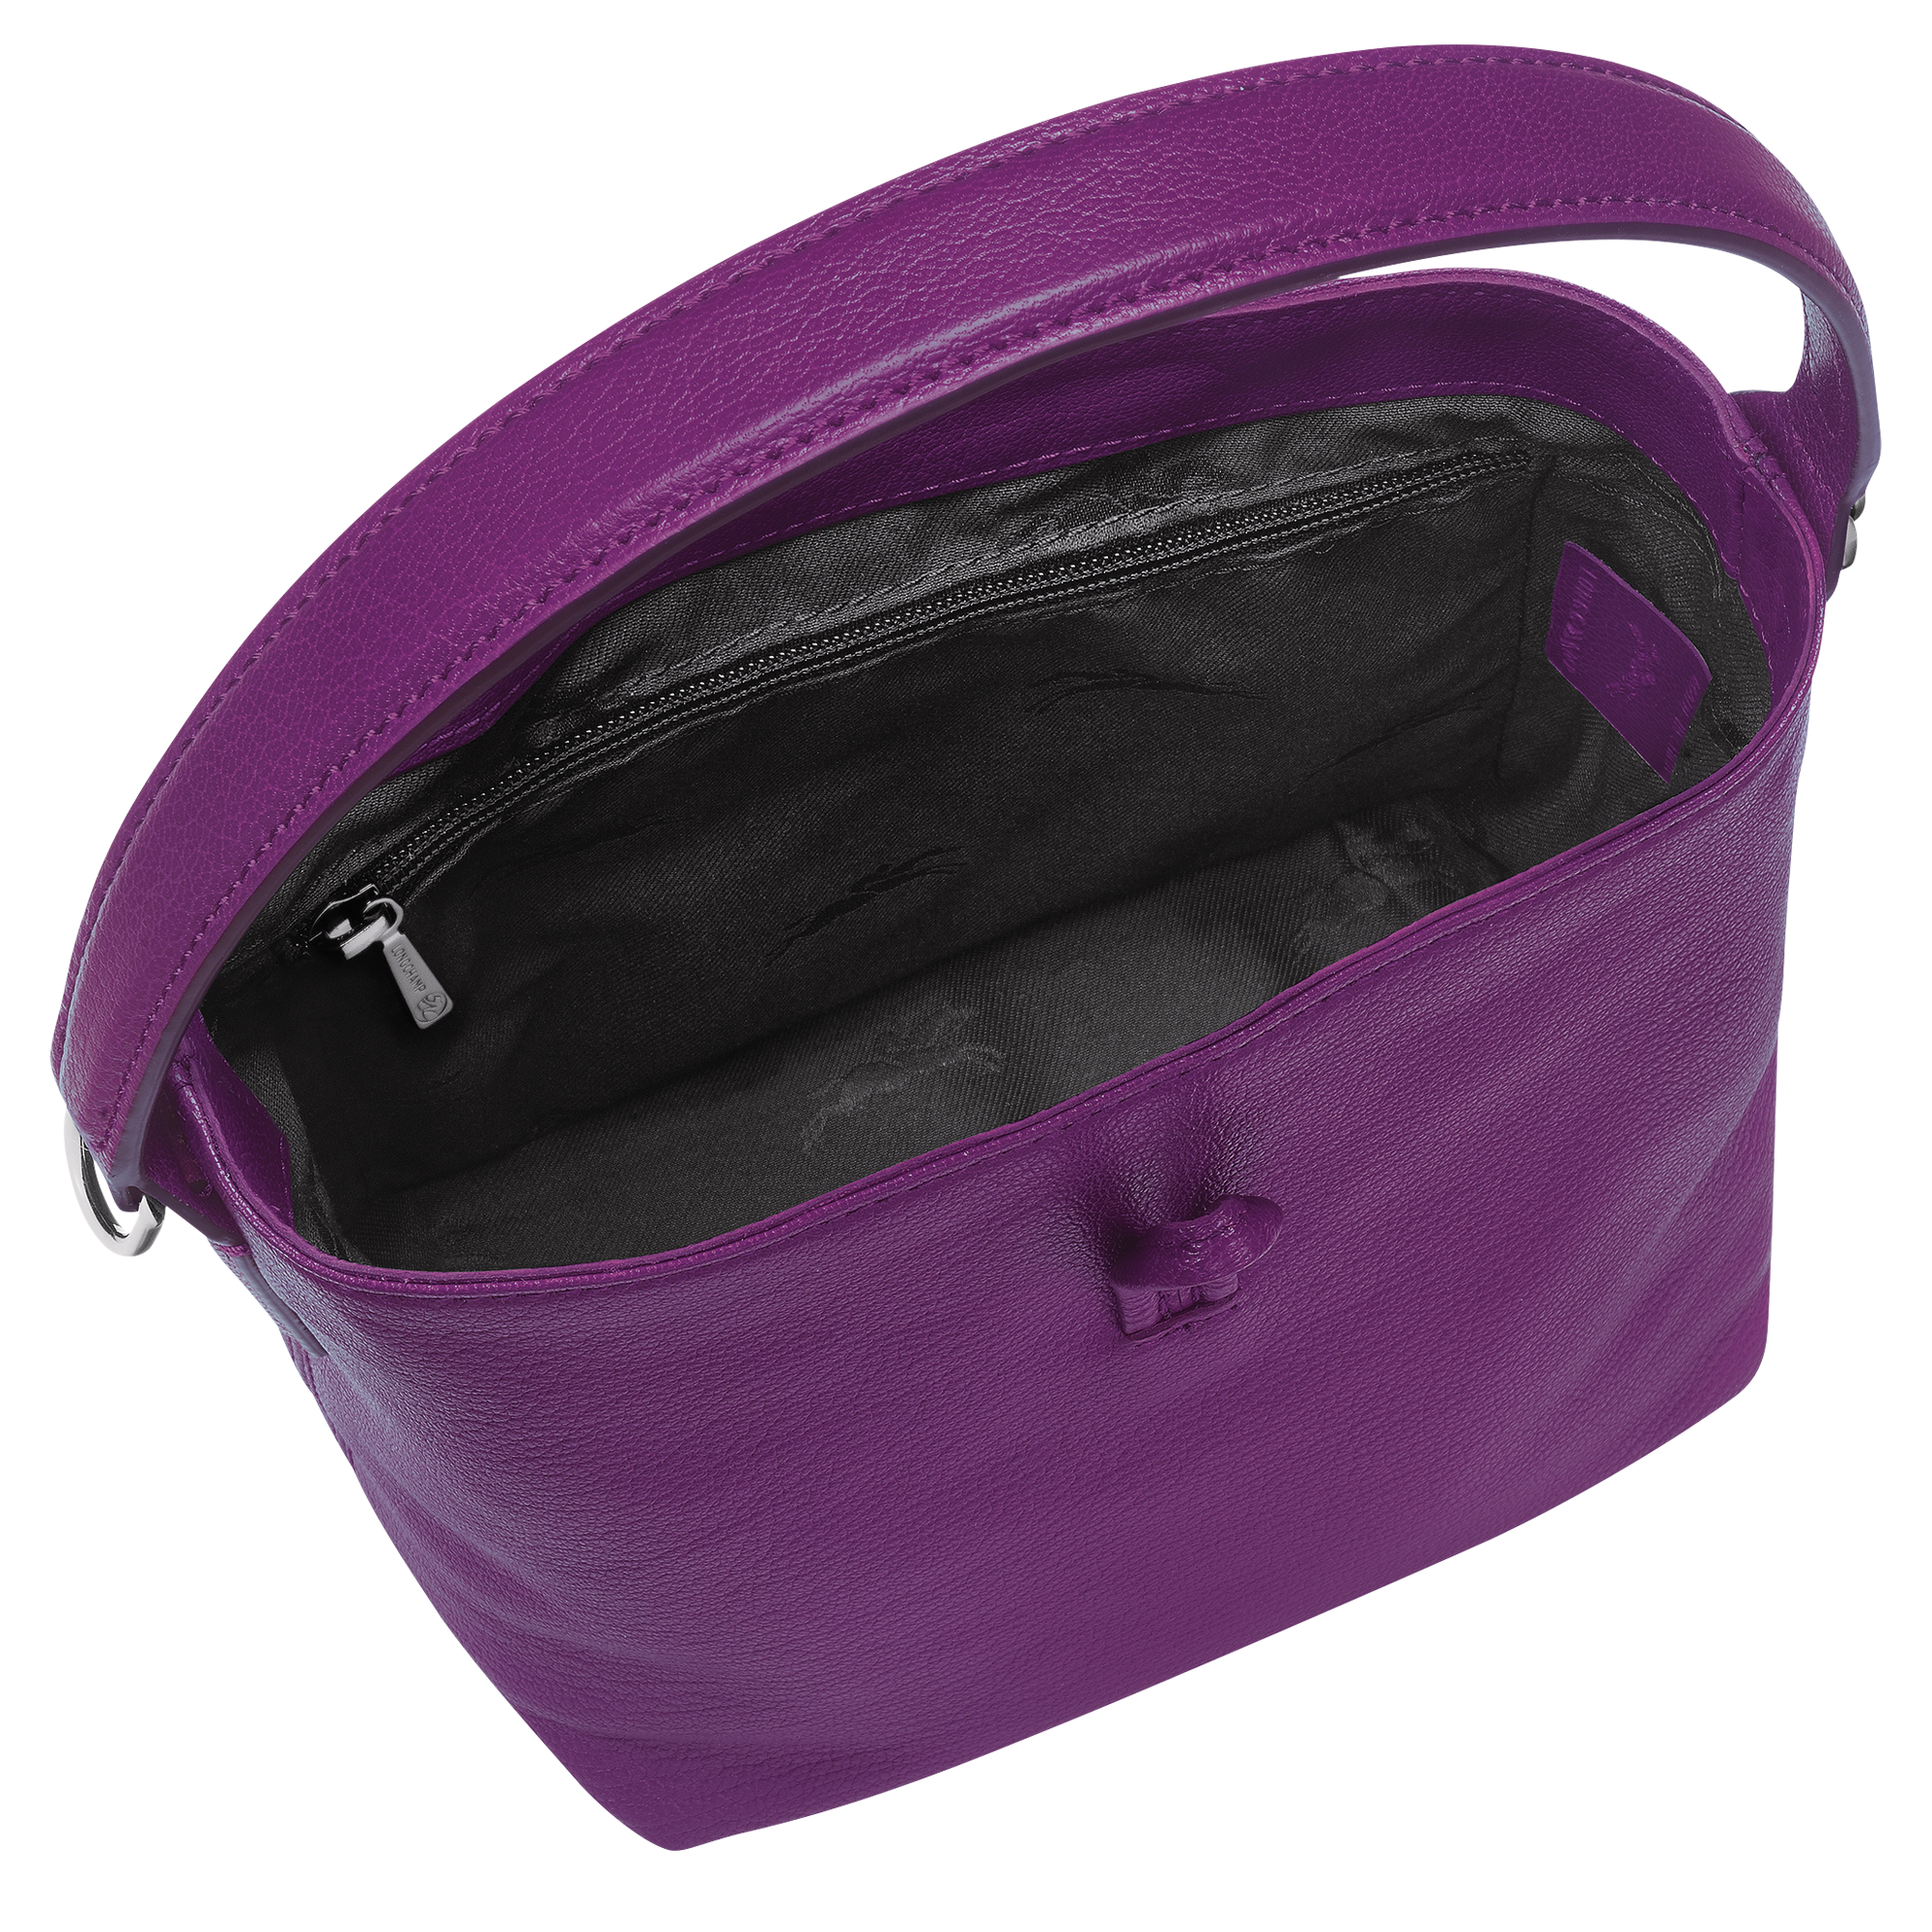 Le Roseau Bucket bag XS, Violet